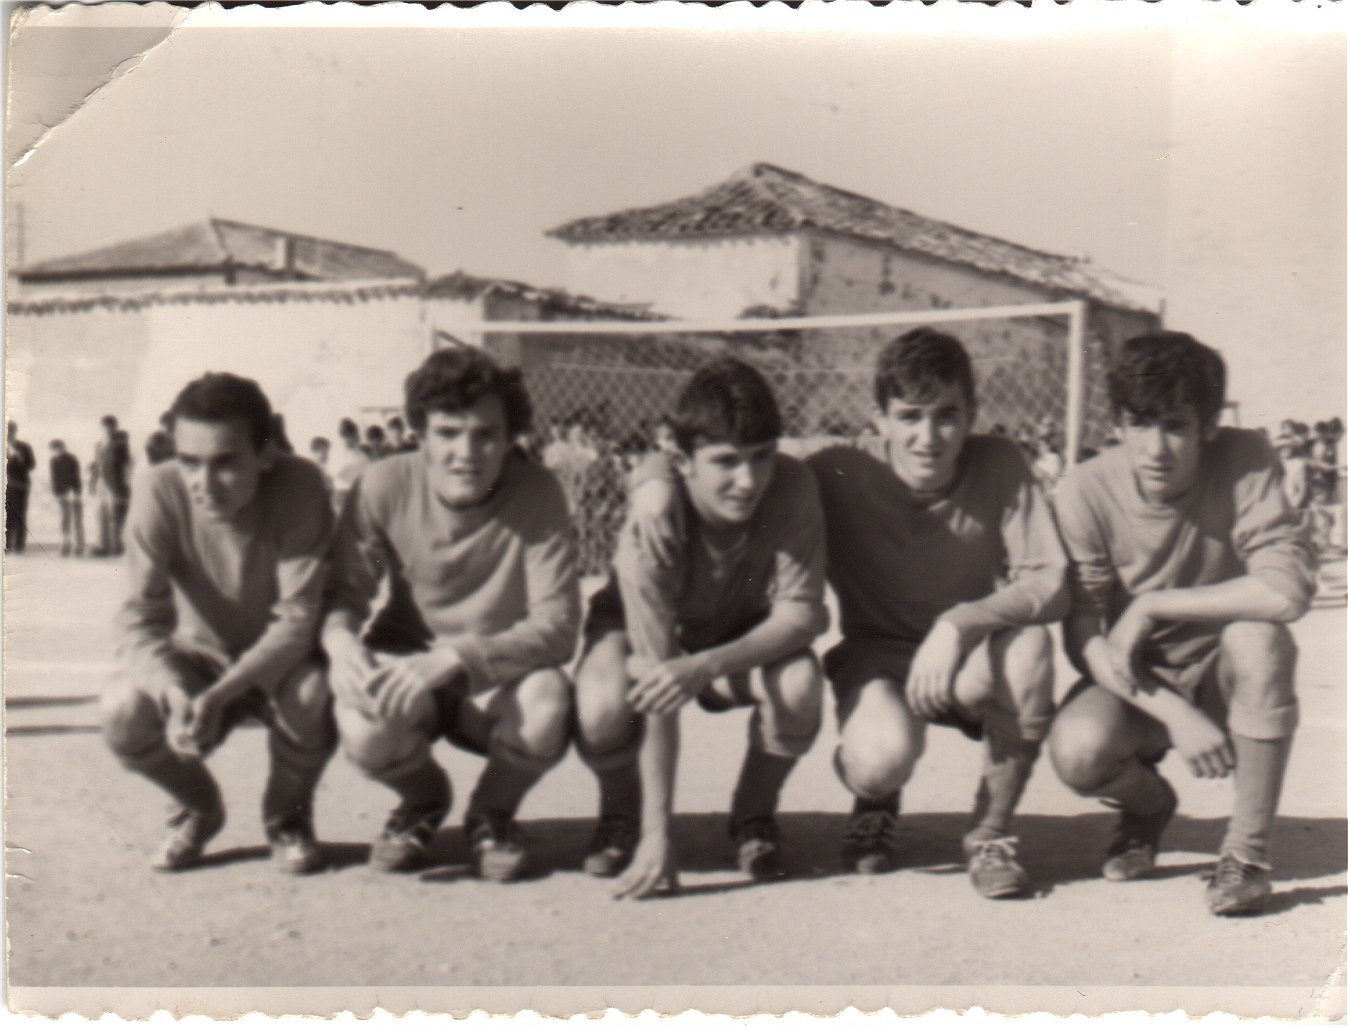 Rafael Peñalver, Graciano, Miguel, Miguel, Leopoldo.